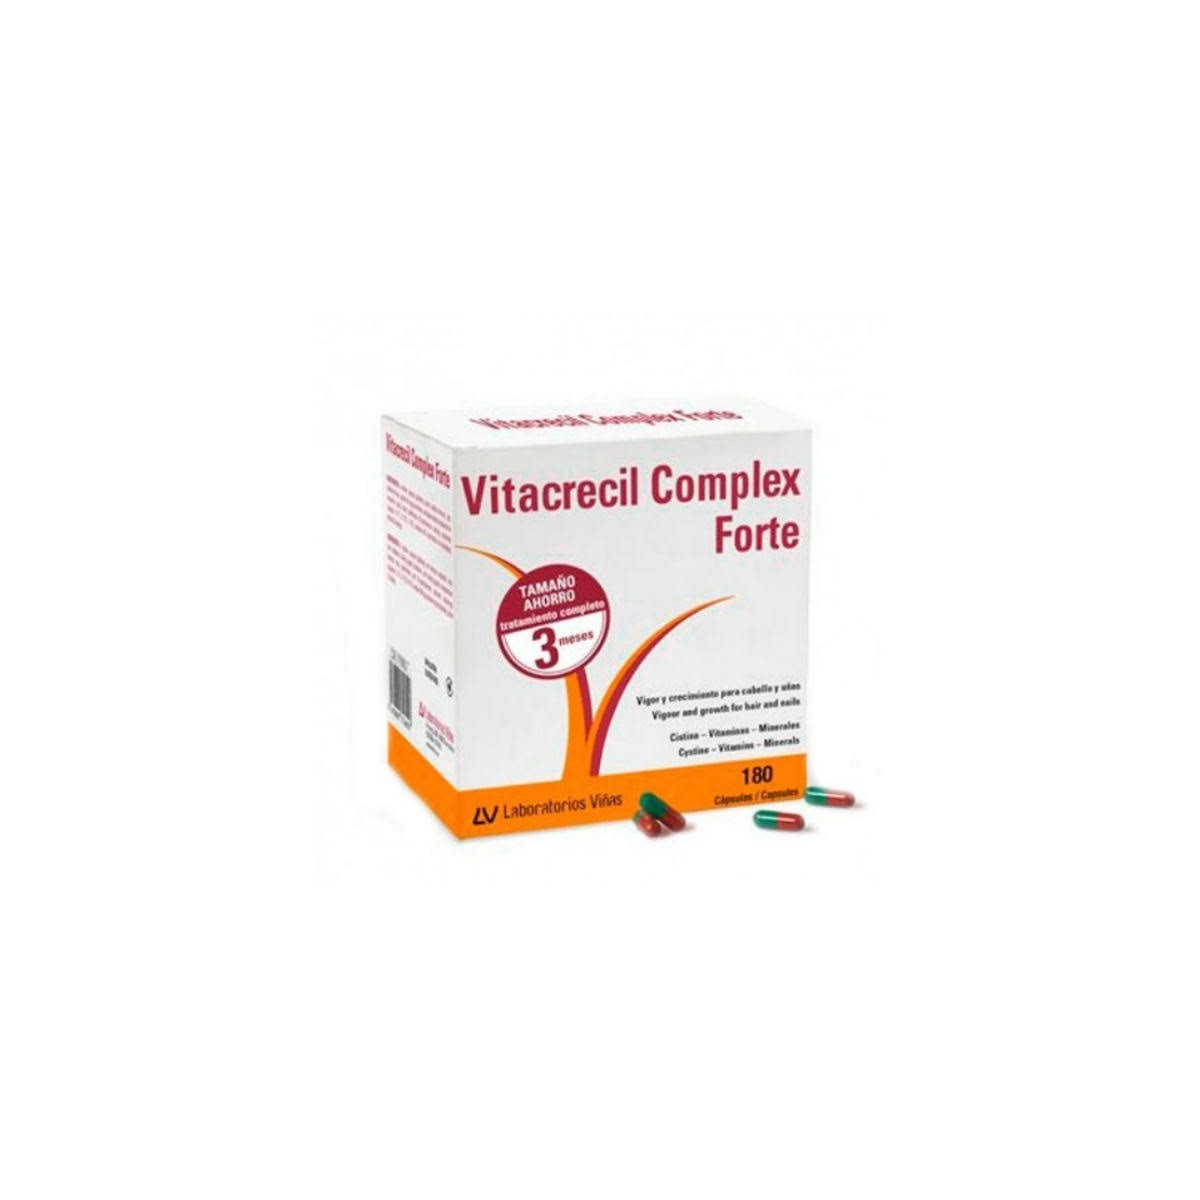 vitacrecil complex forte 180 capsulas